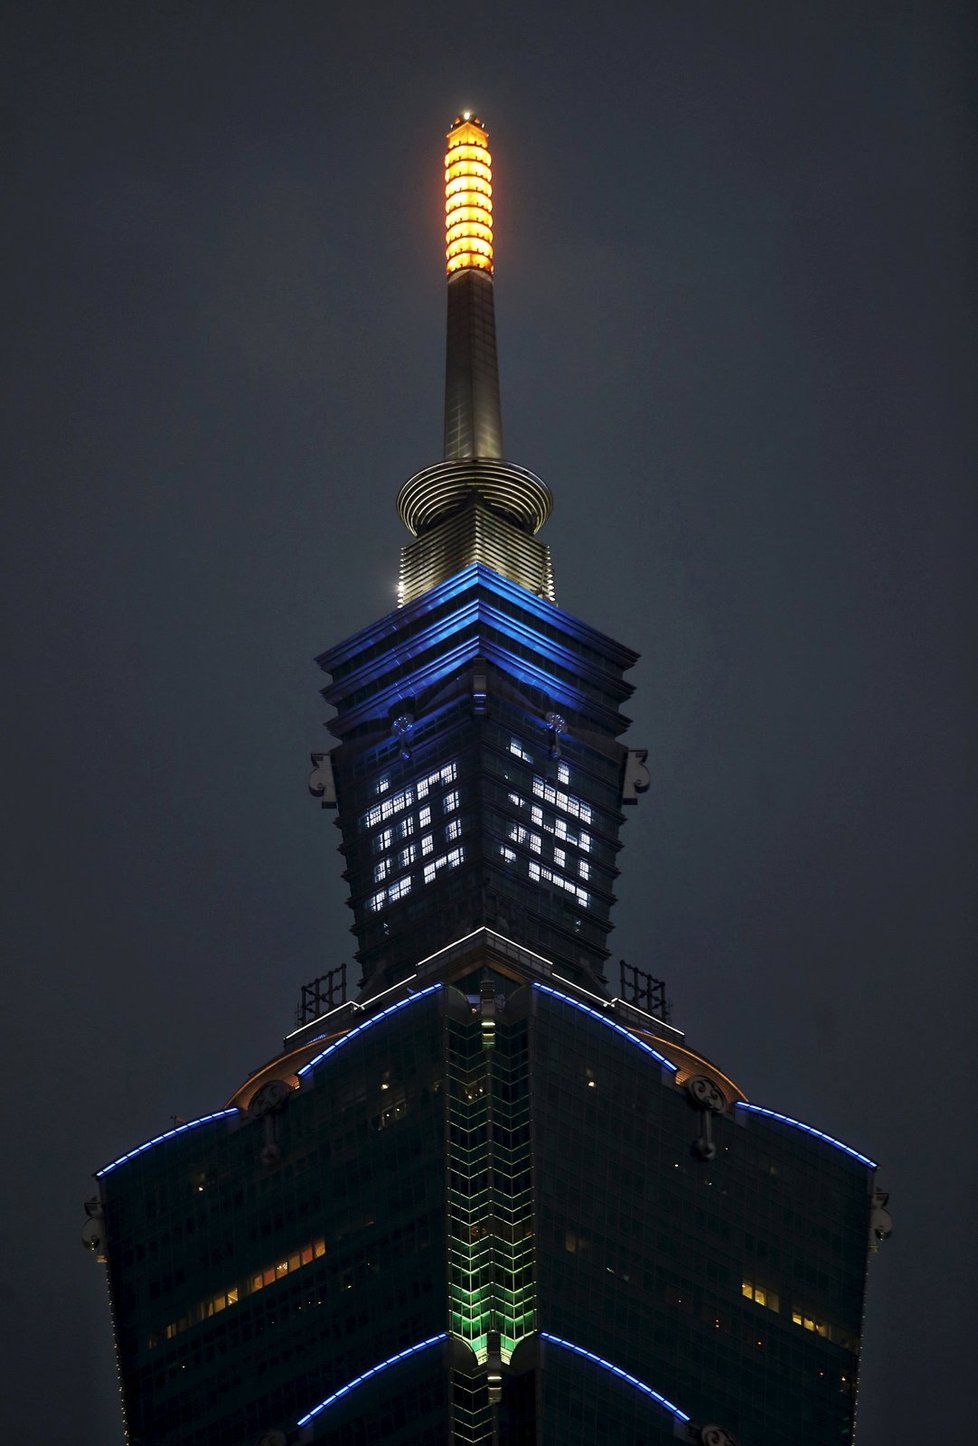 Nápis v čínštině znamenající „Bojujte dál!“ zdobí nejvyšší mrakodrap v Tchaj-peji.